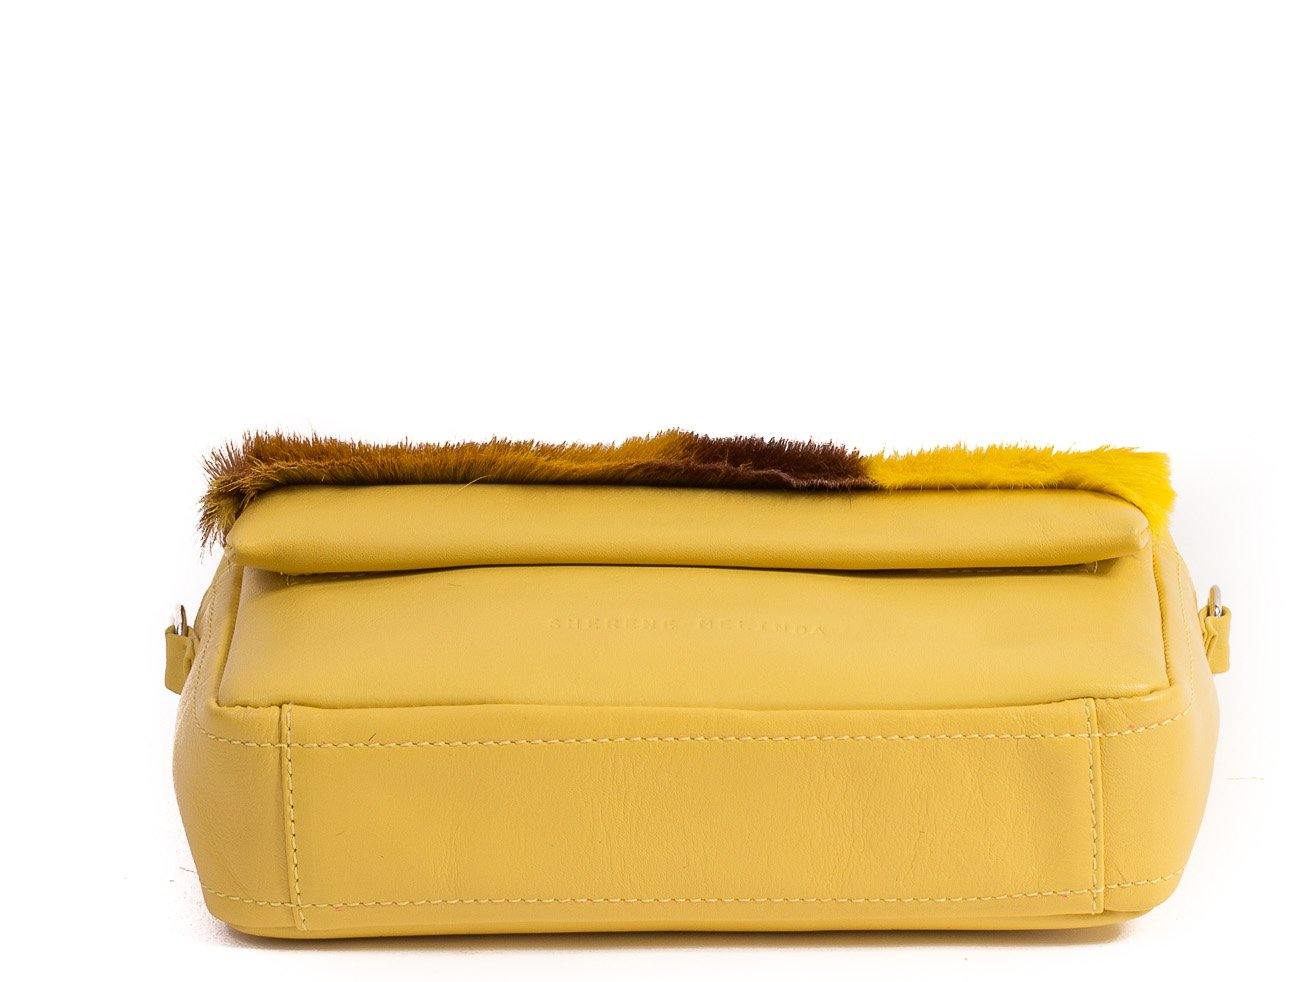 sherene melinda springbok hair-on-hide yellow leather shoulder bag Stripe bottom